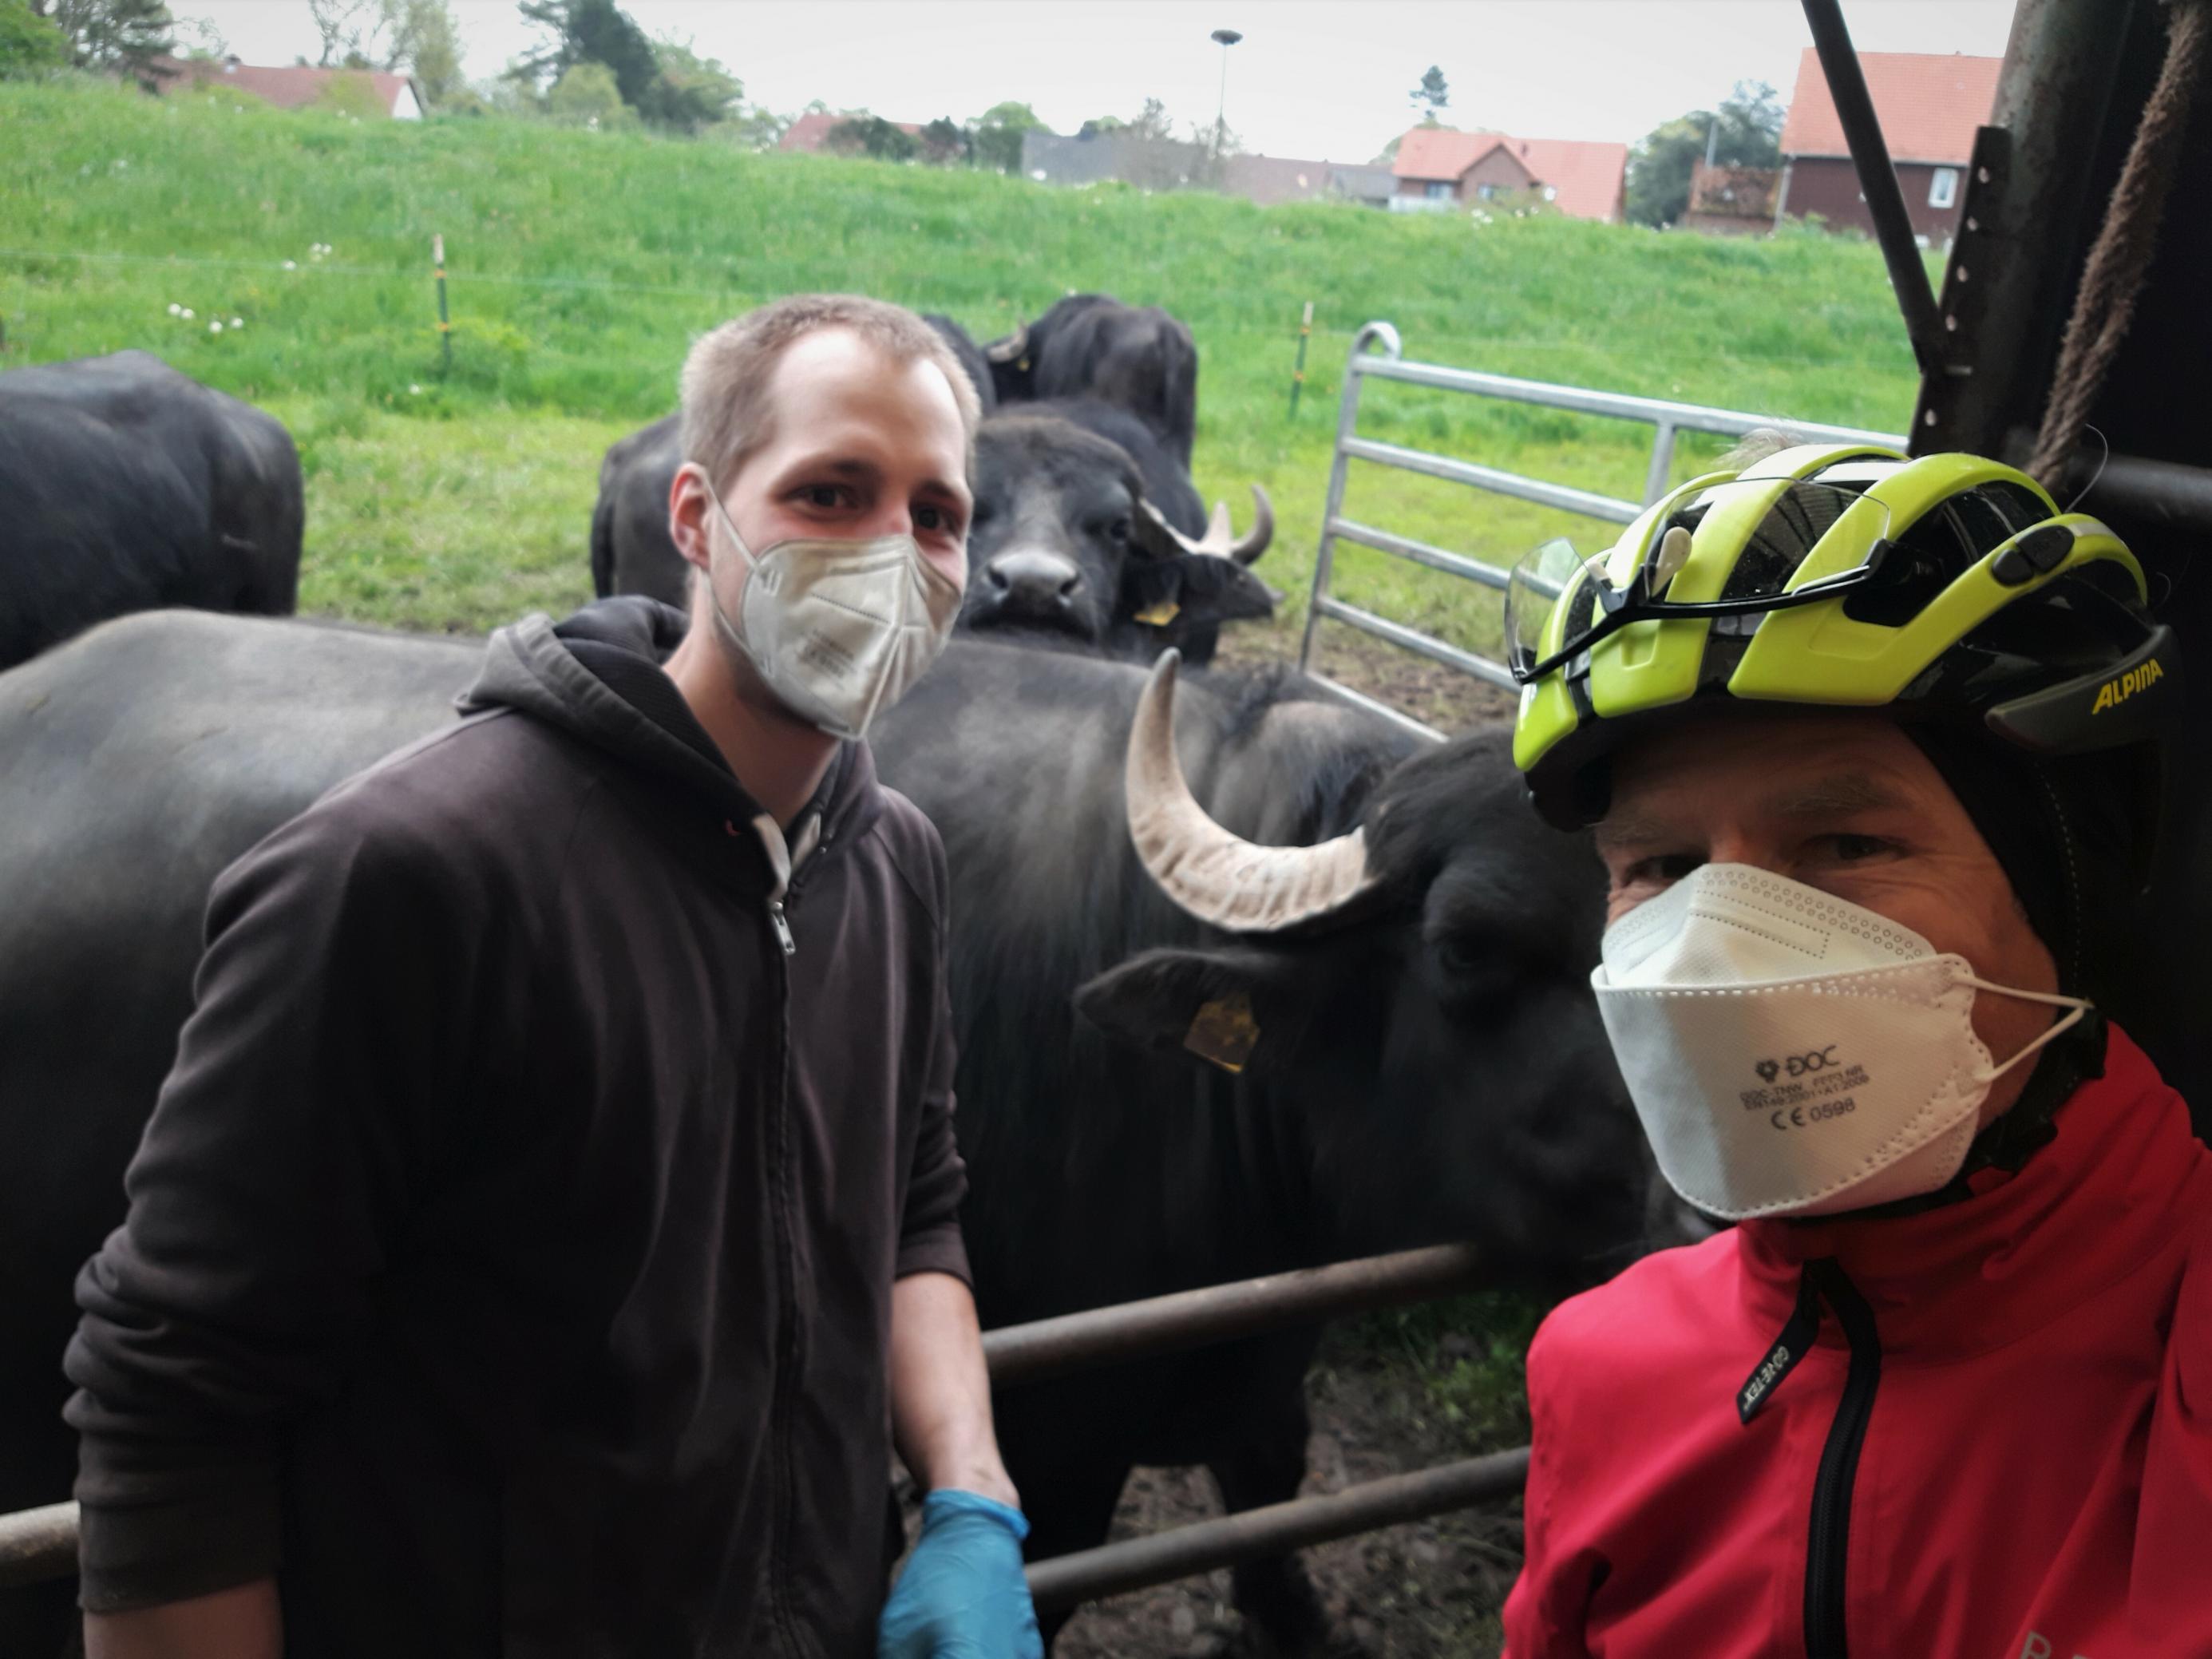 Auf dem Selfie des RadelndenReporters, der am rechten Bildrand zu sehen ist, lehnt sich der junge Landwirt ans Metallgatter, hinter dem im Bildausschnitt vier Büffel zu sehen sind.